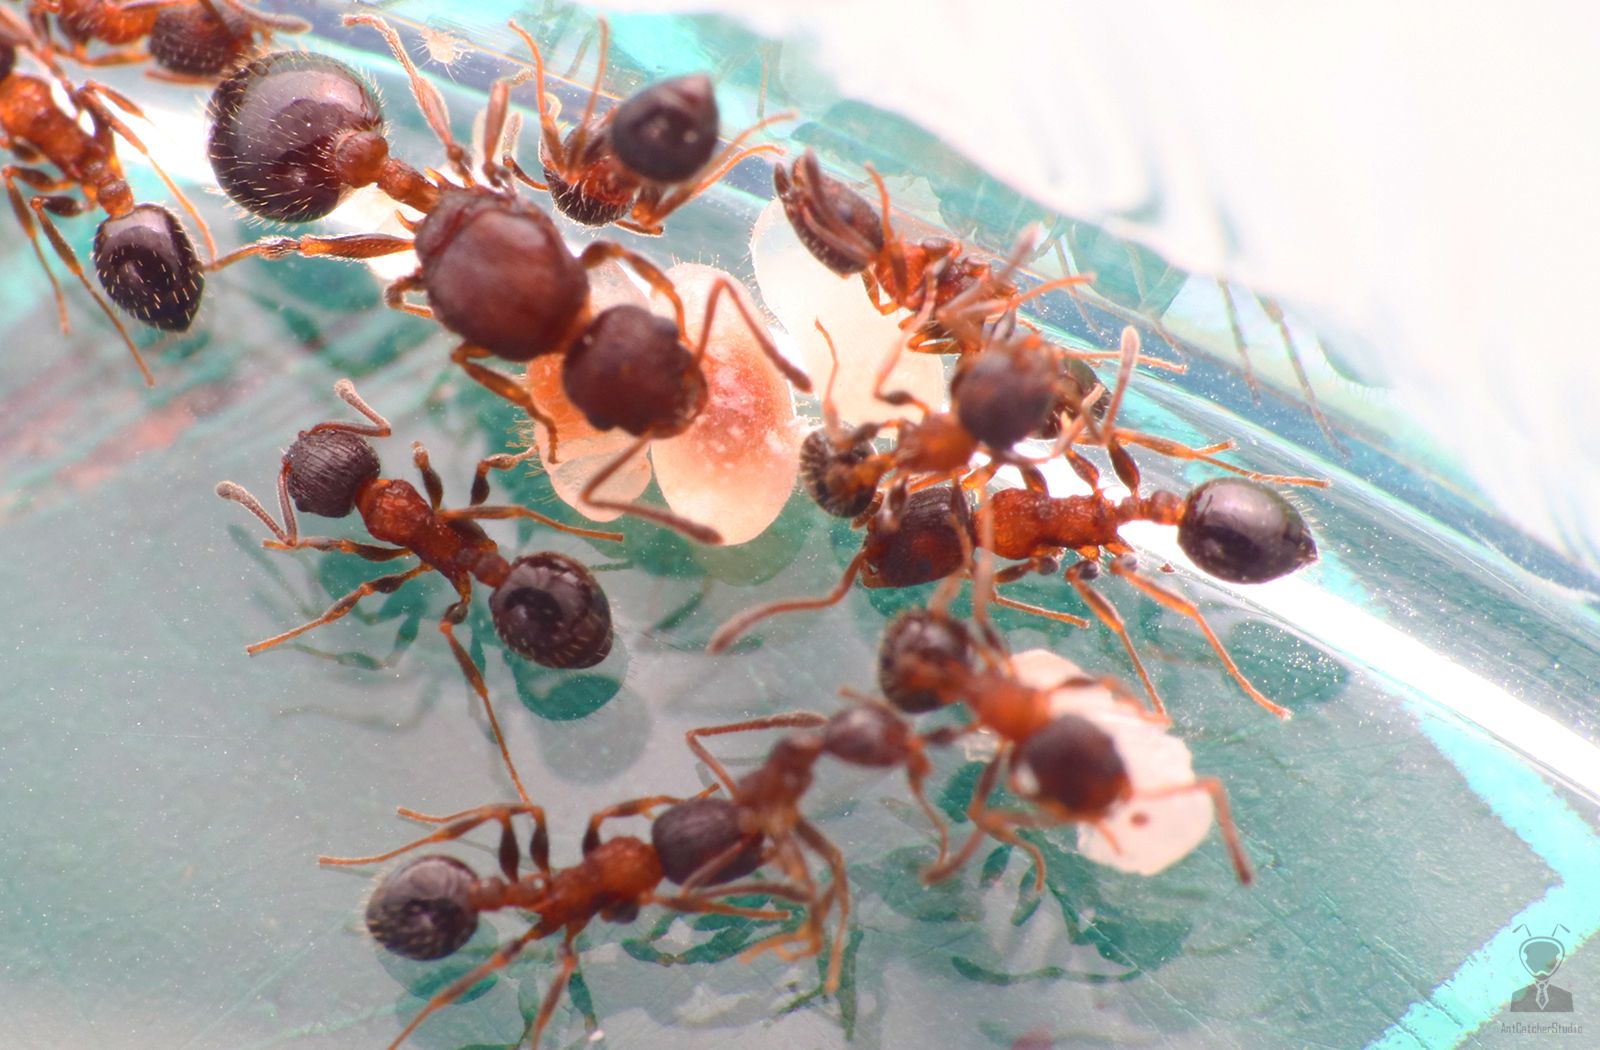 蟻后(左上)幼蟲、工蟻